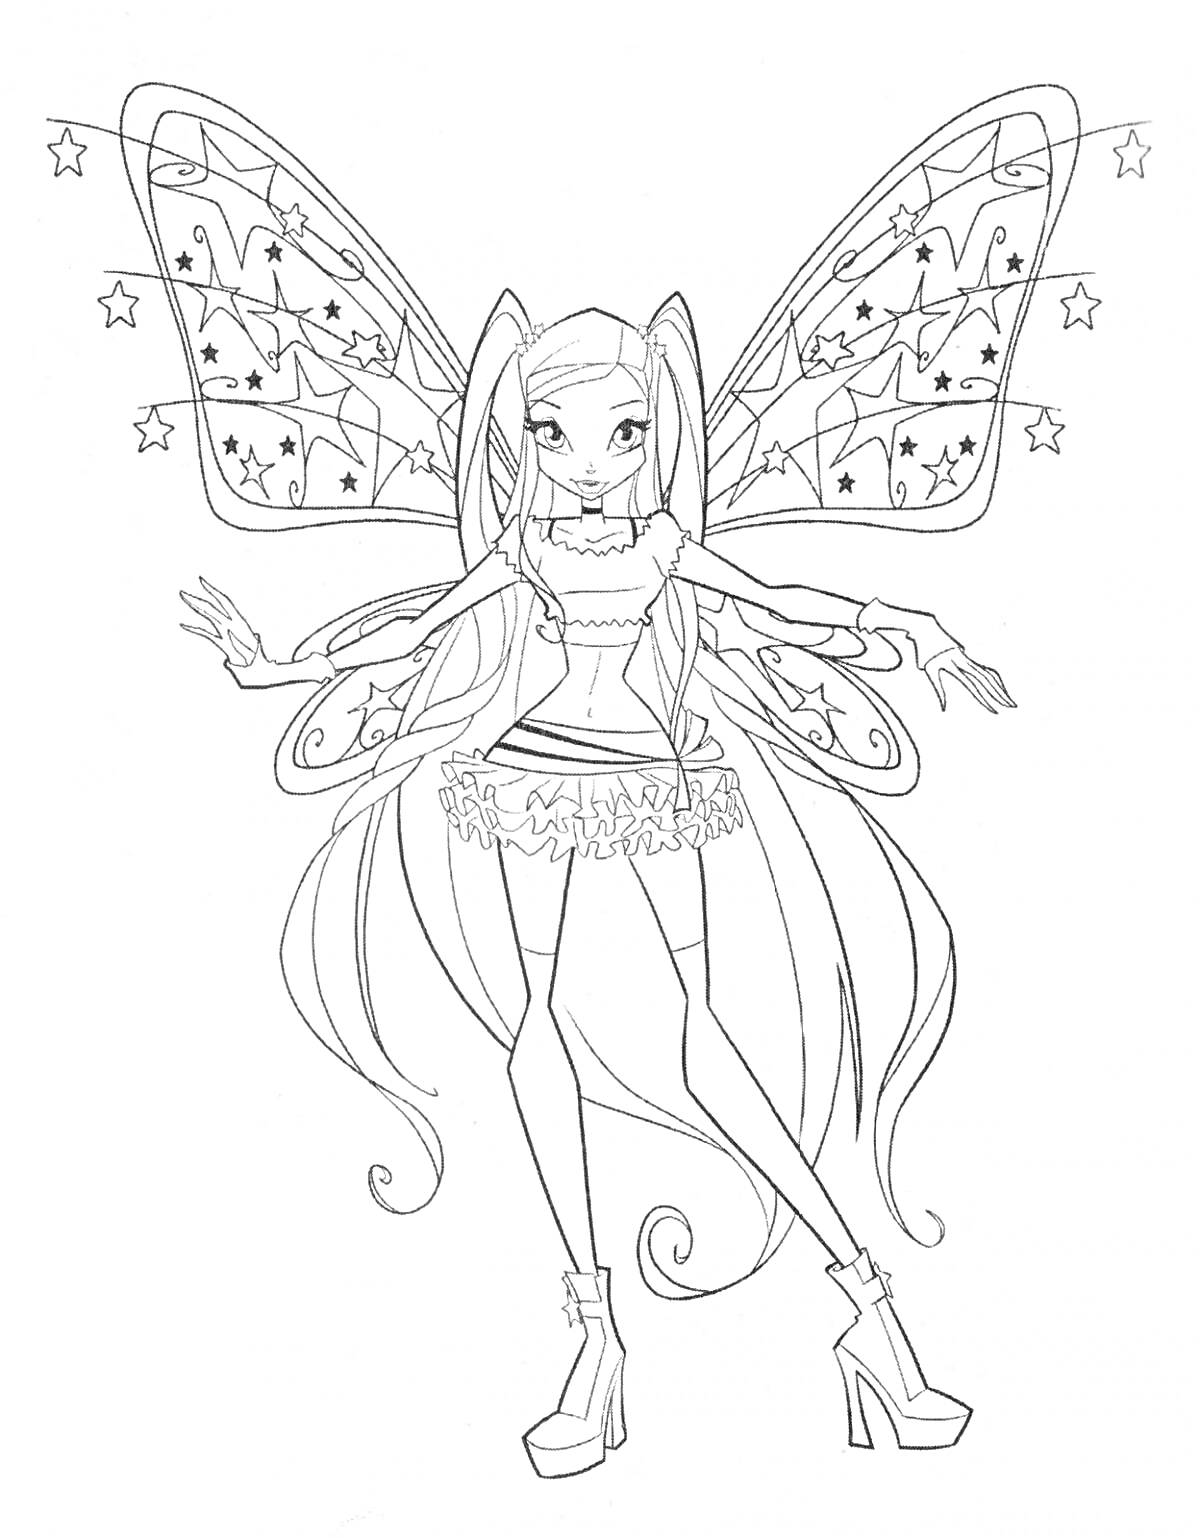 Раскраска Фея с длинными волосами, в одежде с узорами, с крыльями украшенными звездами